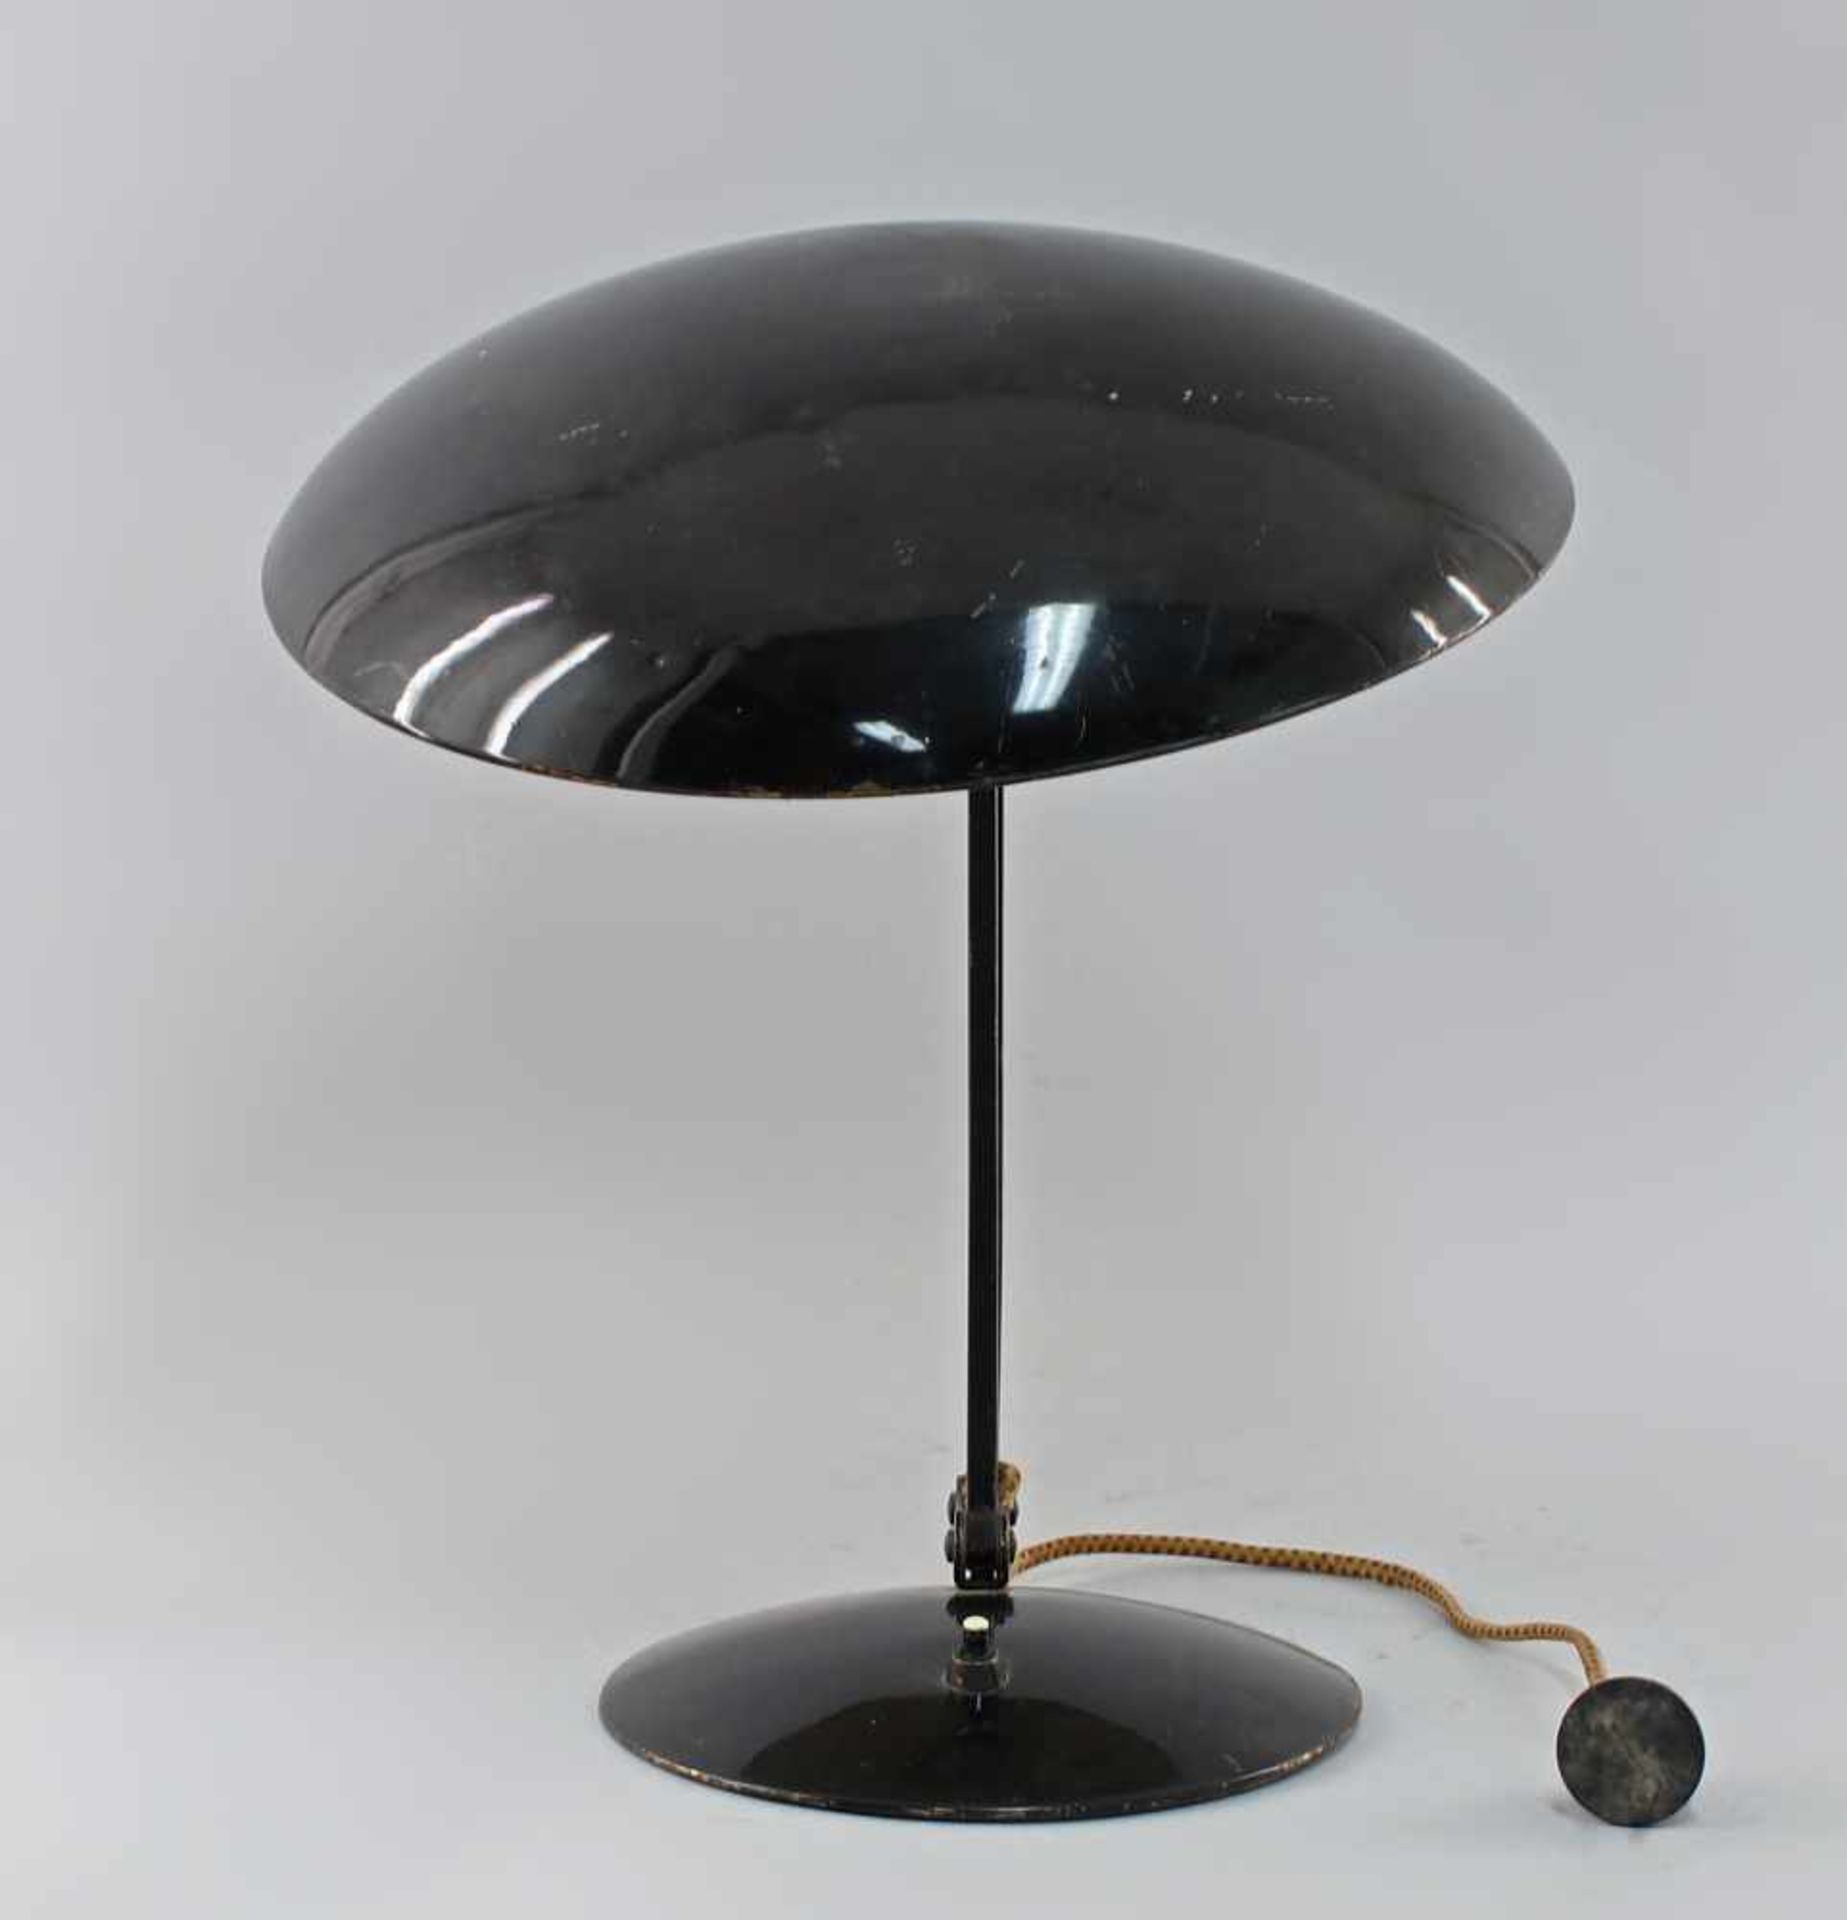 Schreibtischlampe Bauhausum 1930, Kaiser Idell ??, Metall schwarz gefasst, Funktion nicht geprüft, - Bild 2 aus 2